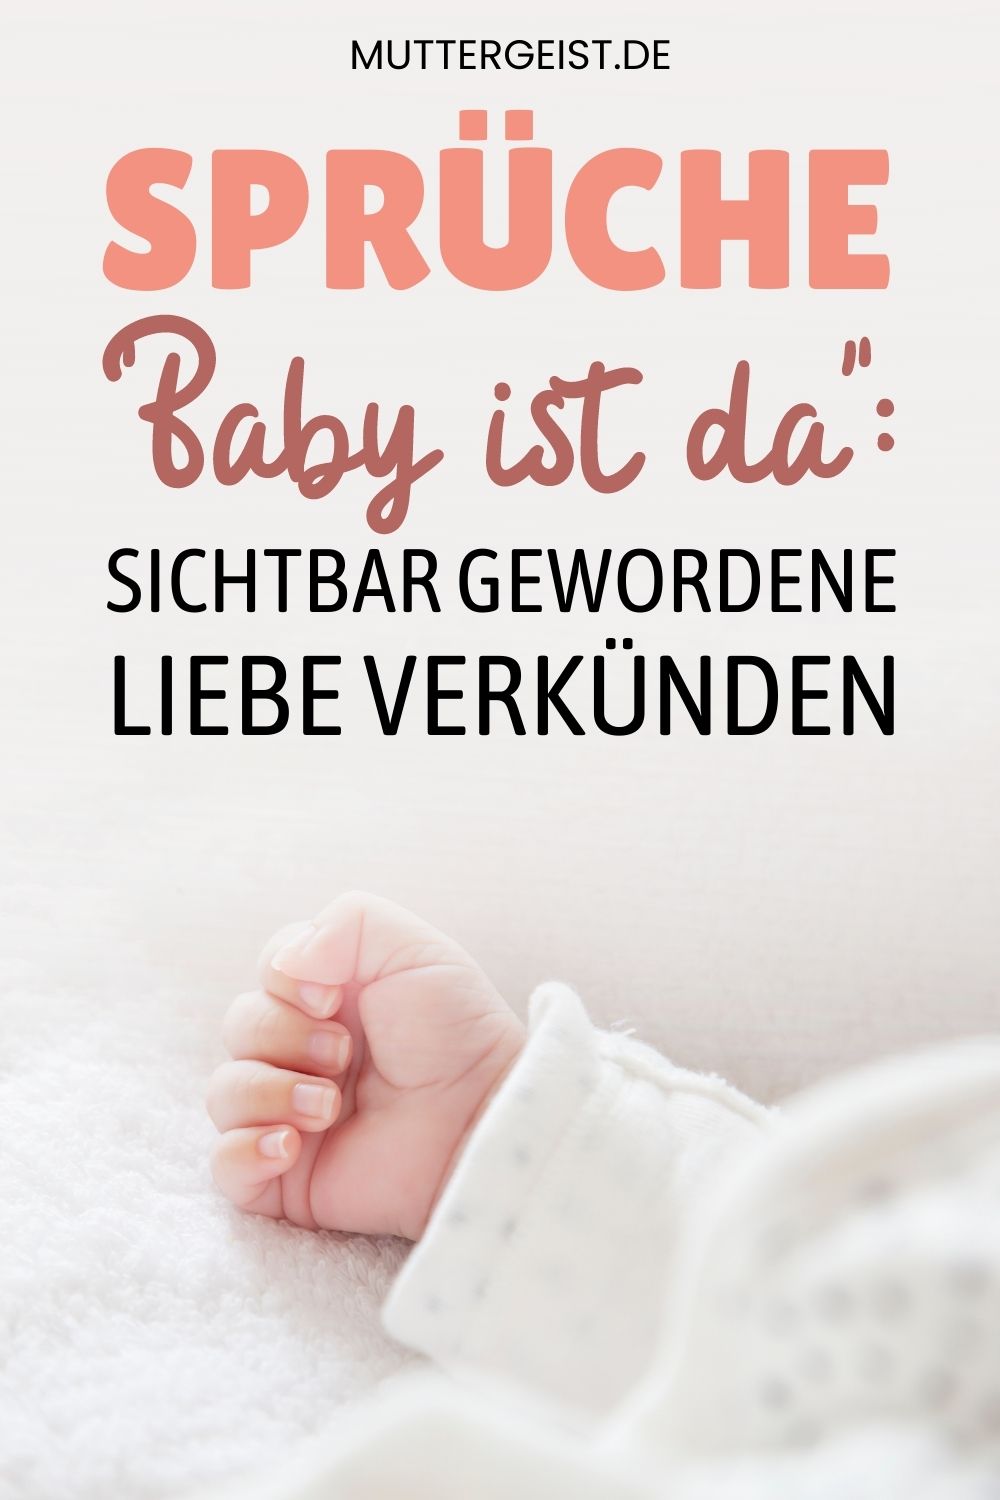 Sprüche “Baby ist da” – Sichtbar gewordene Liebe verkünden Pinterest